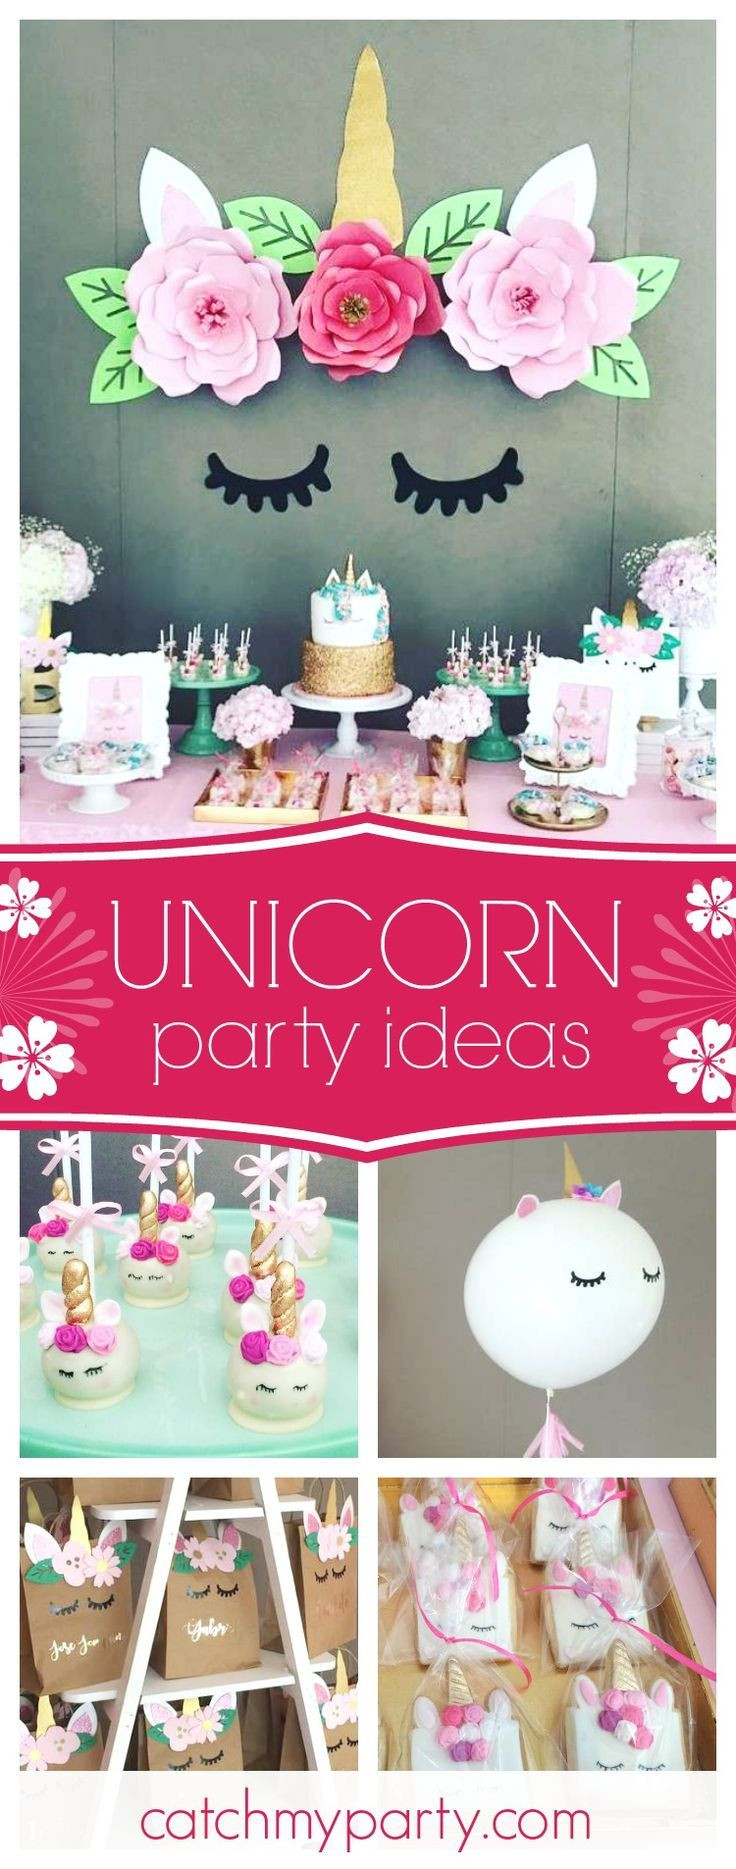 Unicorn Party Ideas
 Best 25 Unicorn birthday parties ideas on Pinterest